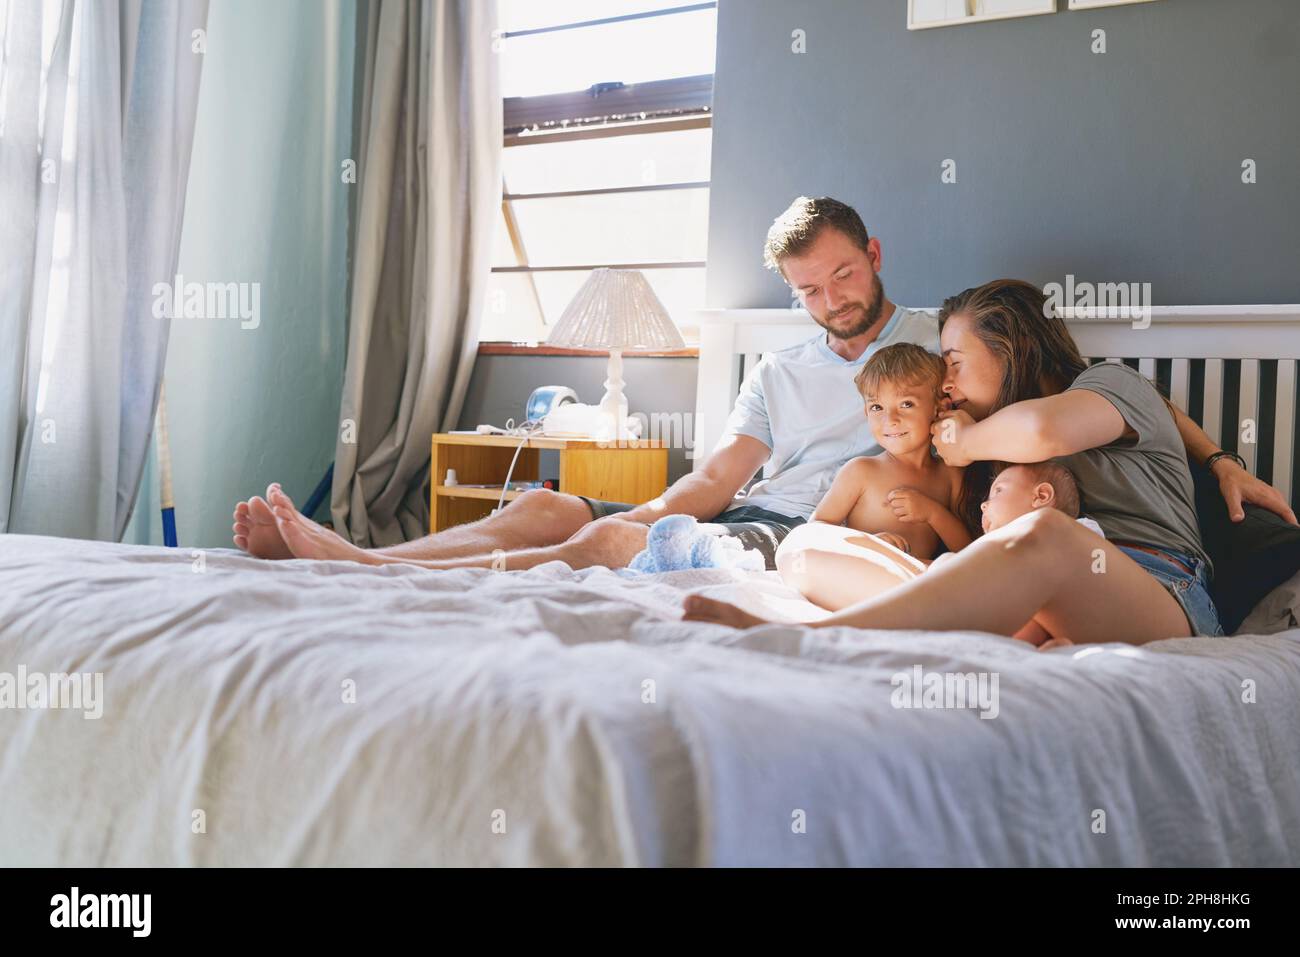 Morgenzeit Familienzeit. Eine junge vierköpfige Familie, die sich im Schlafzimmer anfreundet. Stockfoto